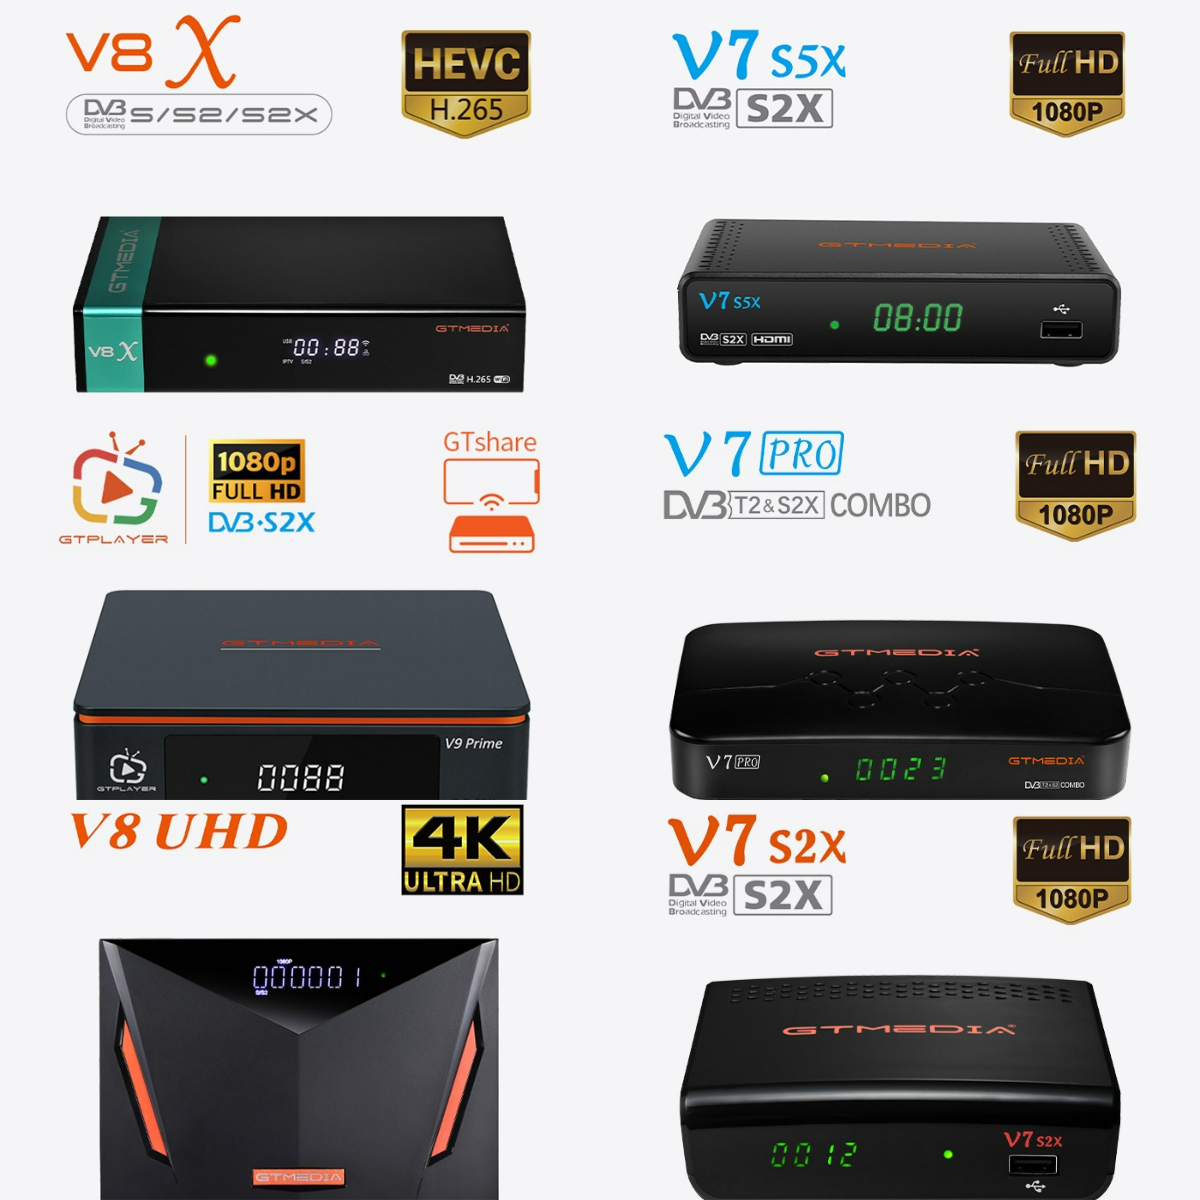 Nuevo sistema Ecam para GTmedia V8X, v7s2x, V8UHD, V9 Prime